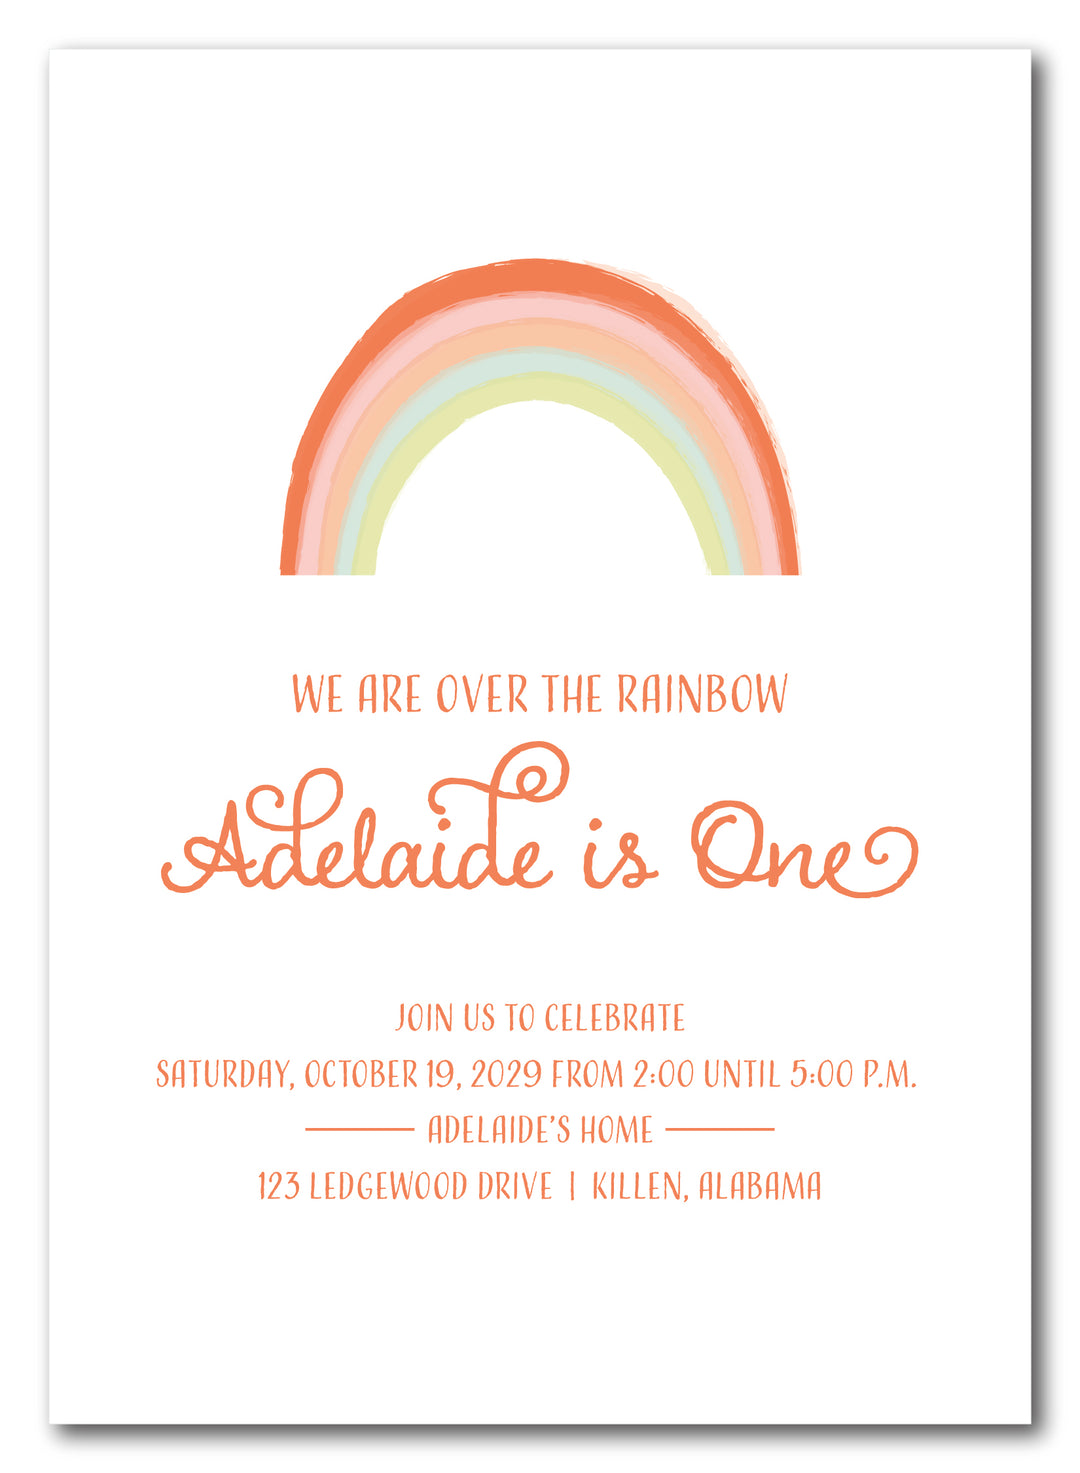 The Rainbow Birthday Party Invitation